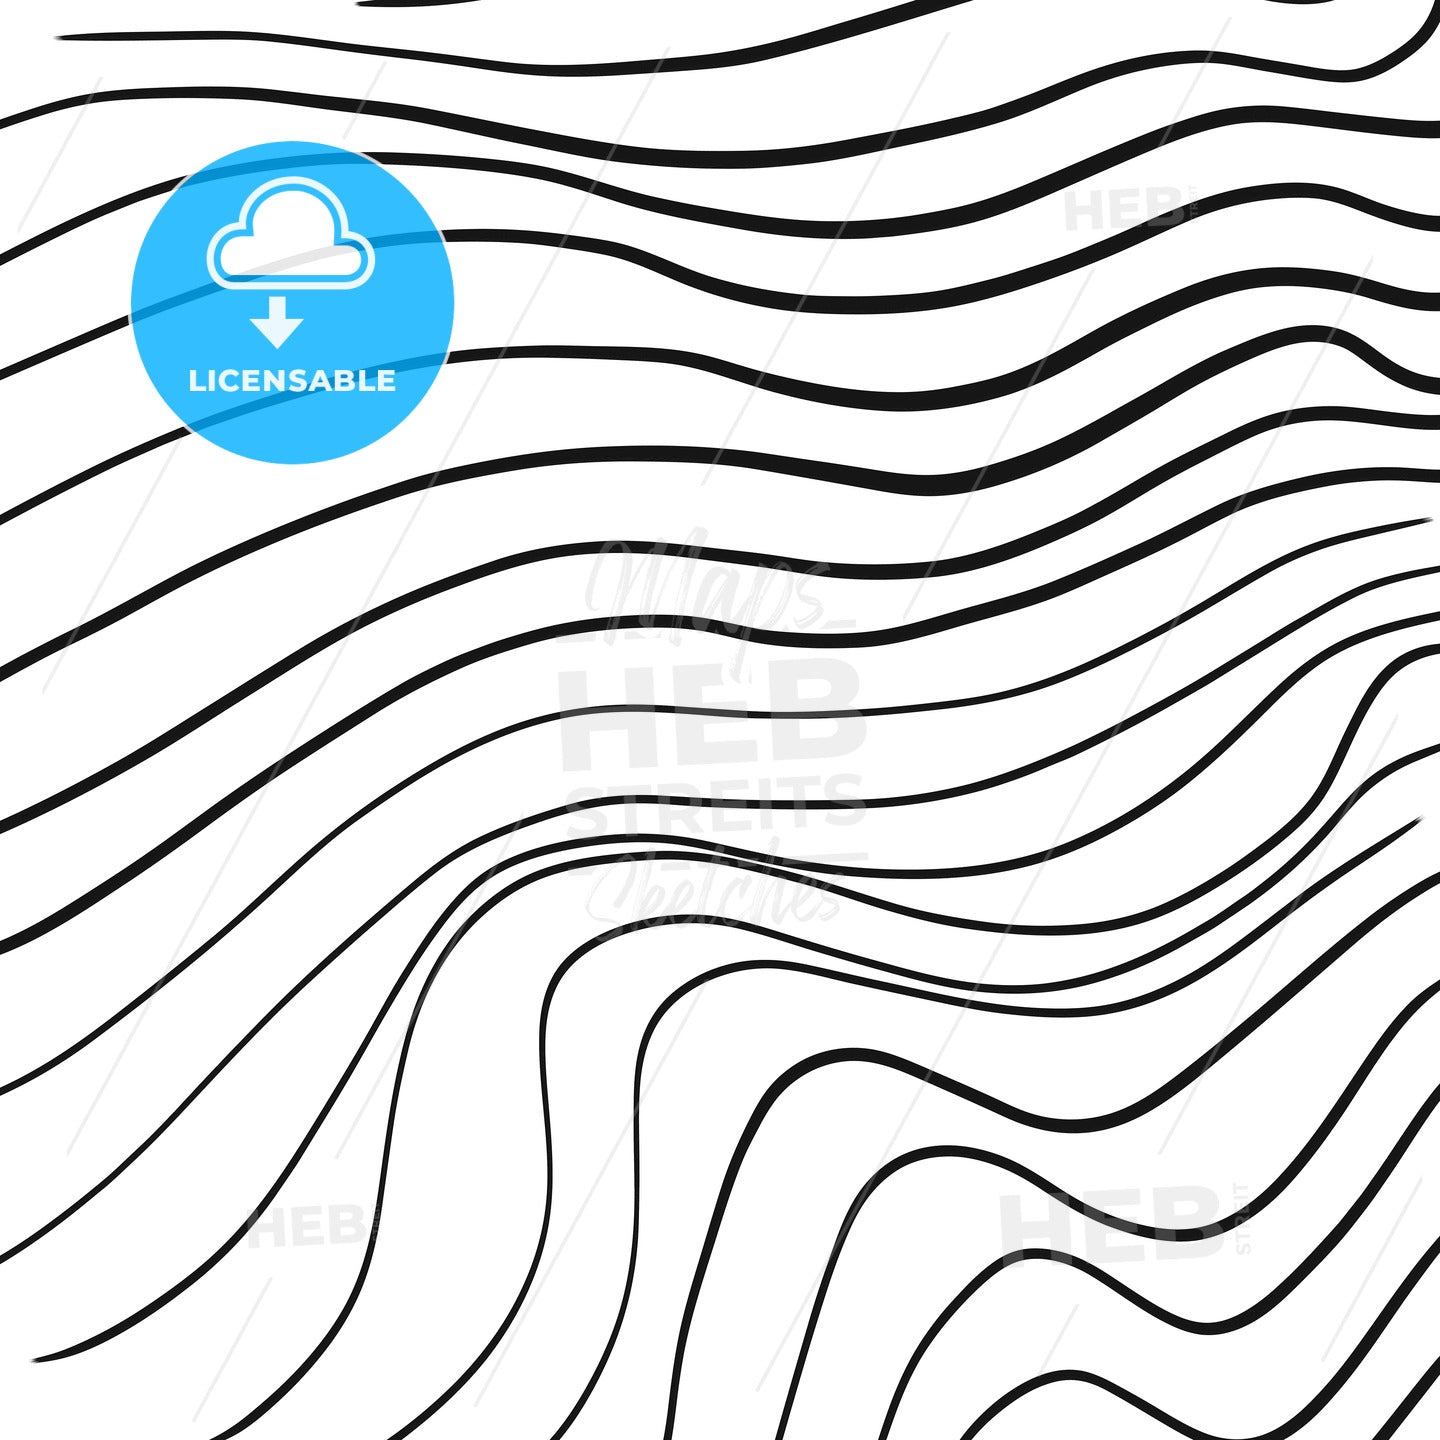 Hand-drawn line art wavy pattern – instant download